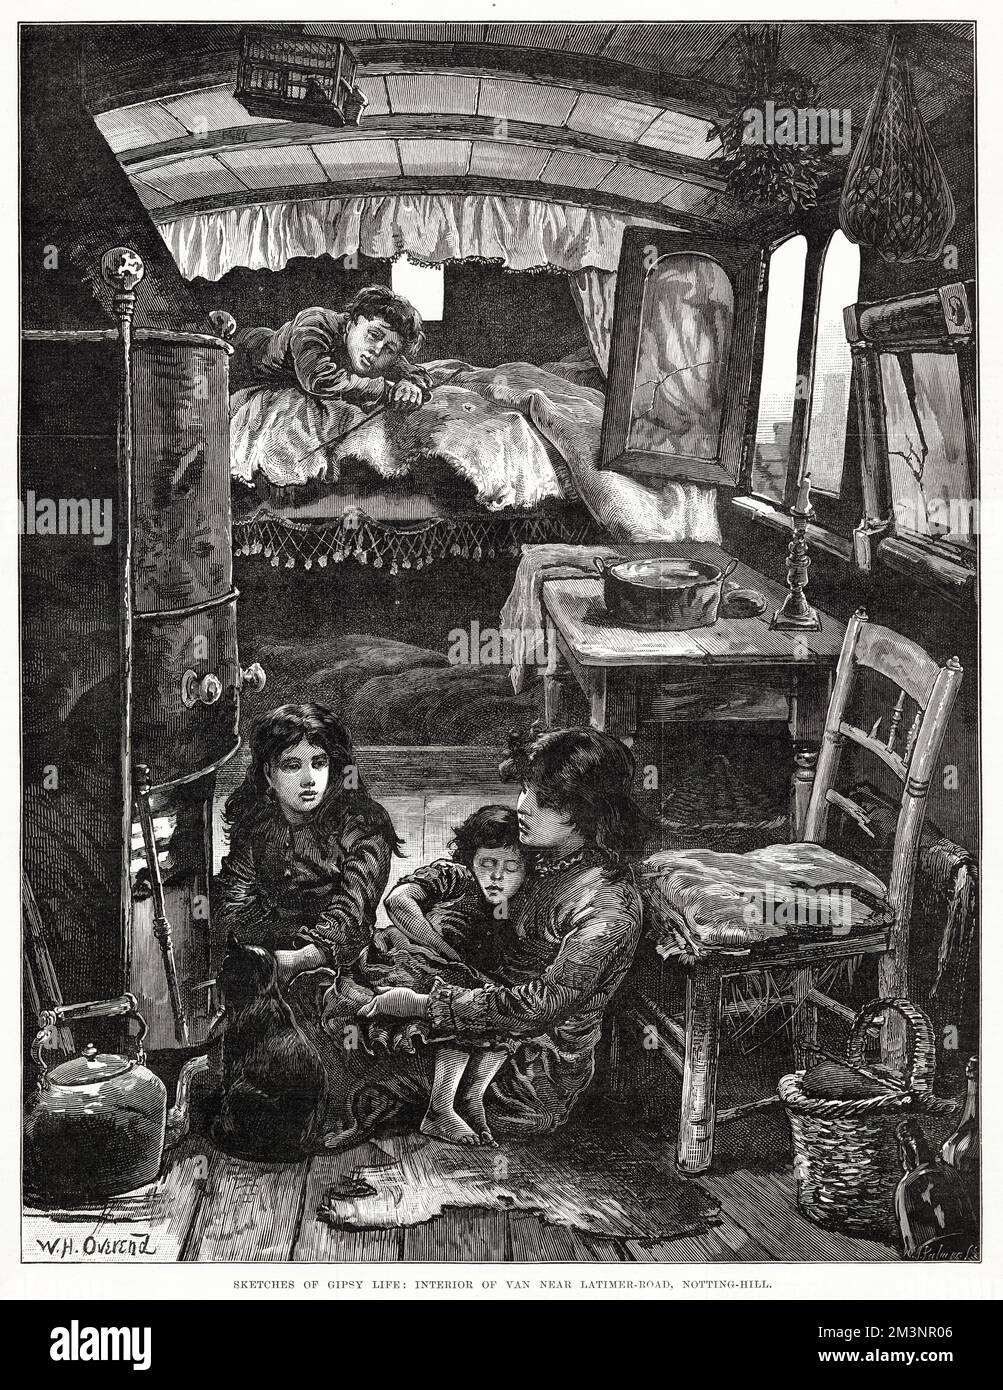 Die Lebensbedingungen in einer Zigeunerkarawane, in der Nähe der Latimer Road. Datum: 1879 Stockfoto